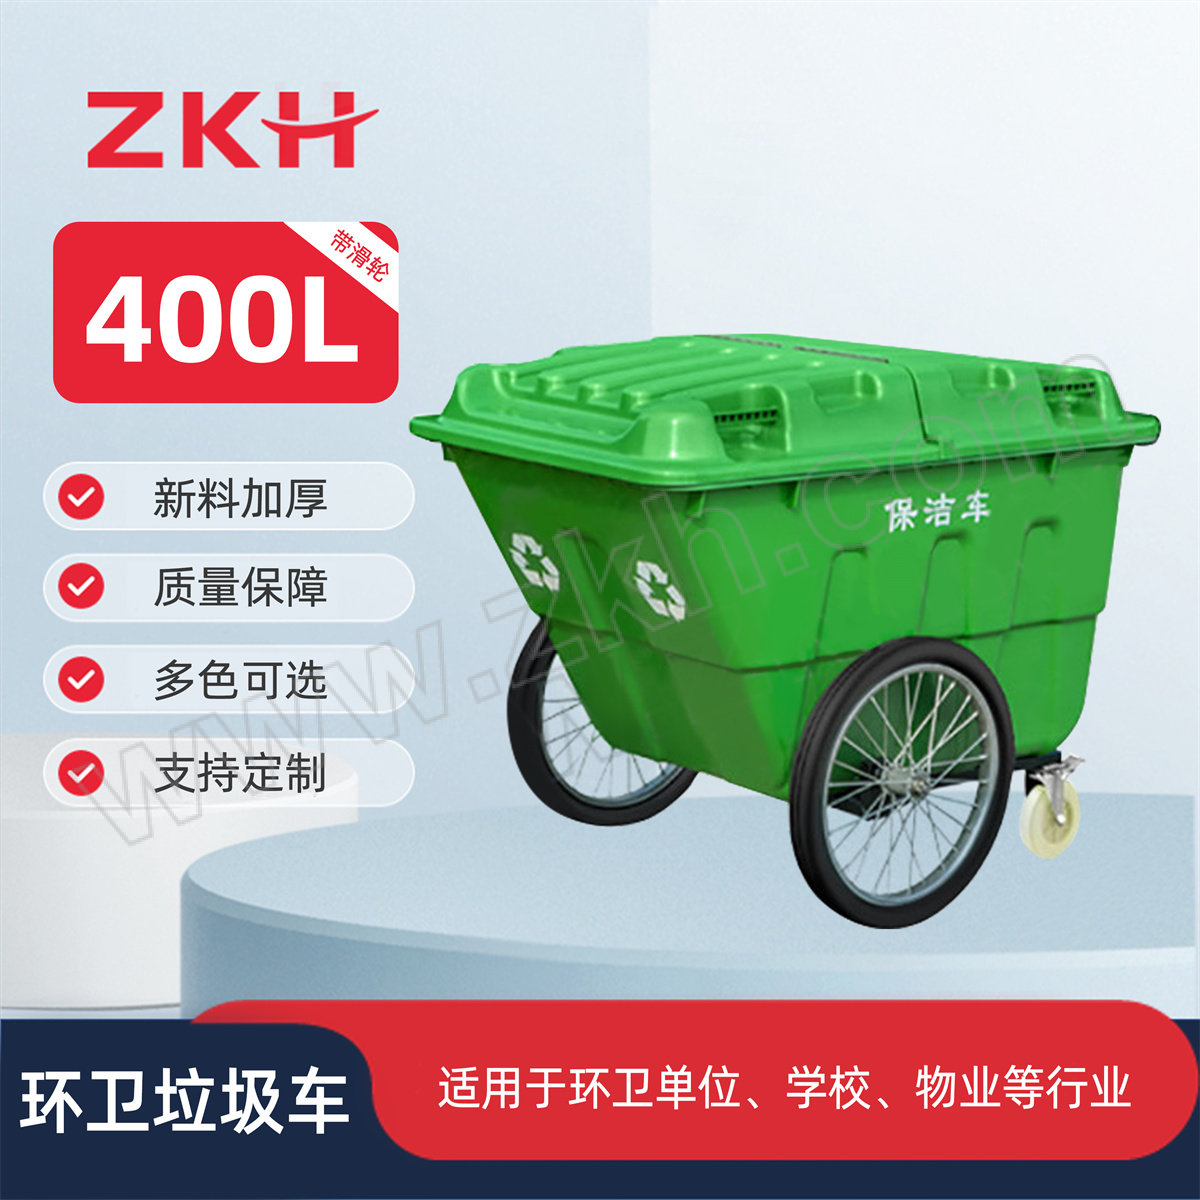 ZKH/震坤行 环卫手推垃圾车 ZKH-400L-1 125×90×97cm 绿色 1个